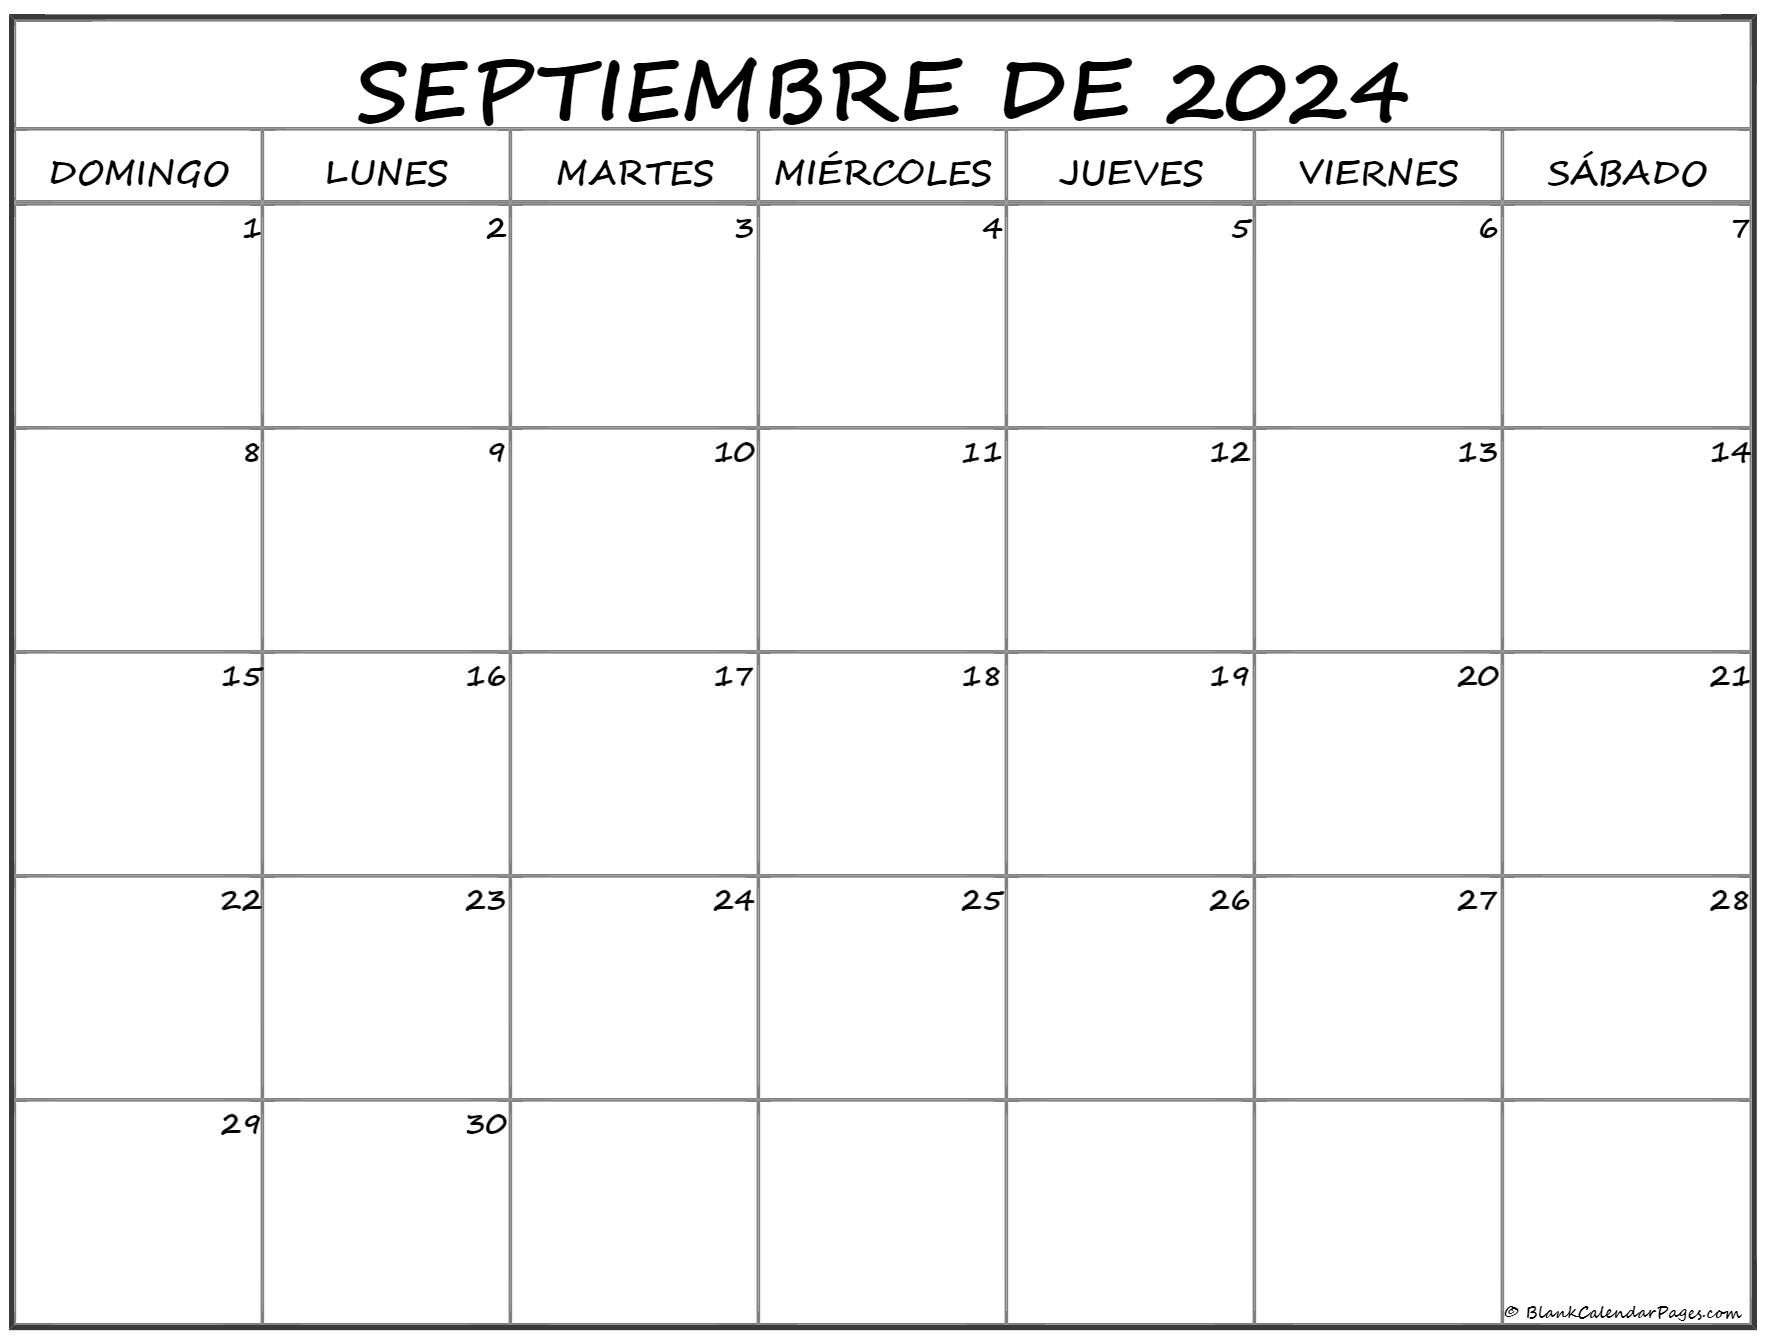  Calendario 2024 – Calendario de pared 2024, septiembre